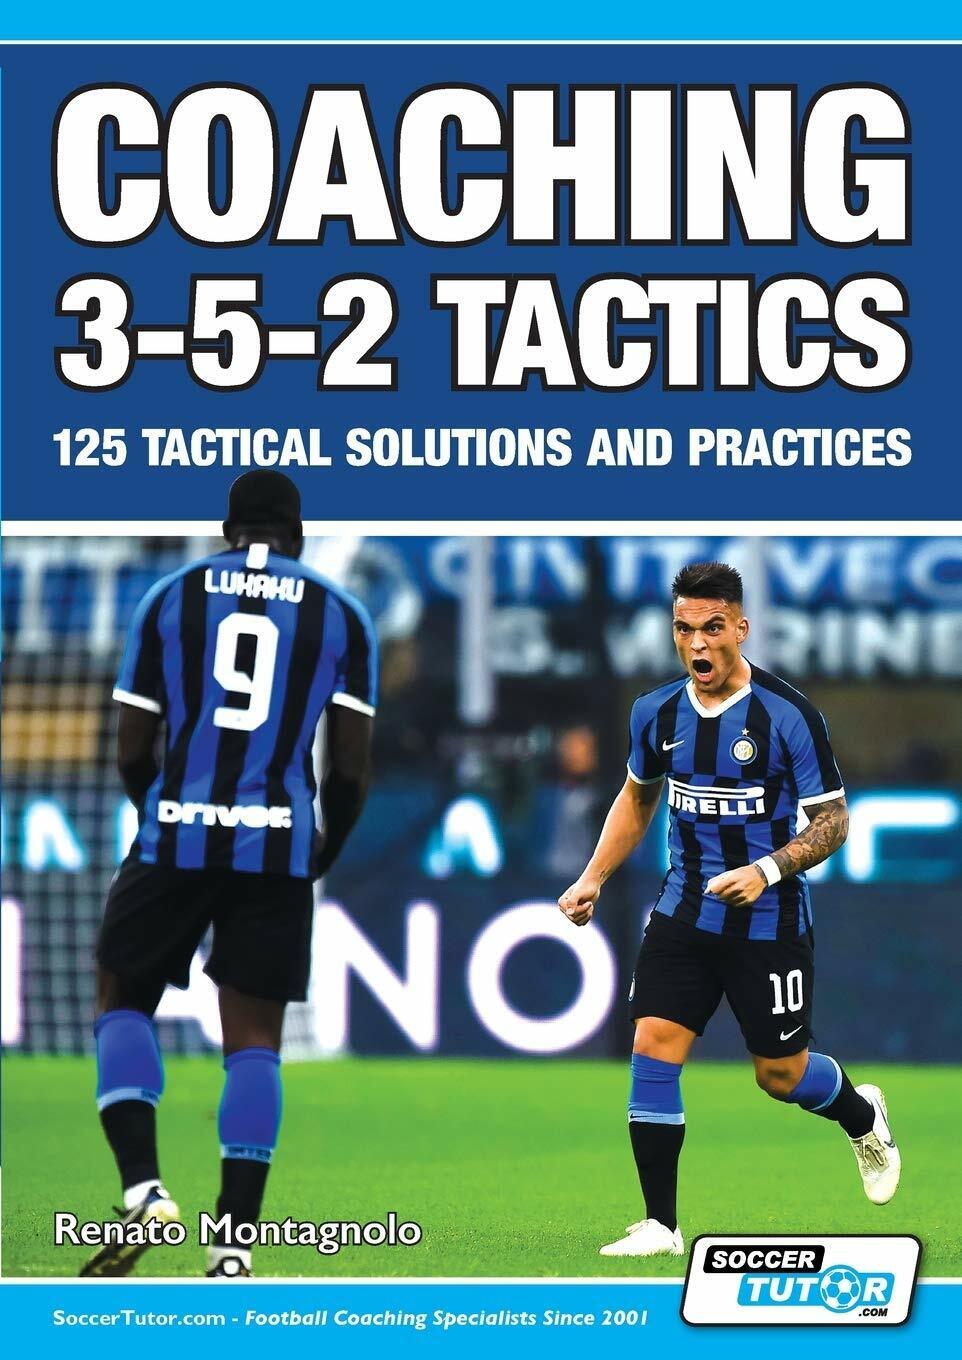 Coaching 3-5-2 Tactics - Renato Montagnolo - SoccerTutor.com, 2020